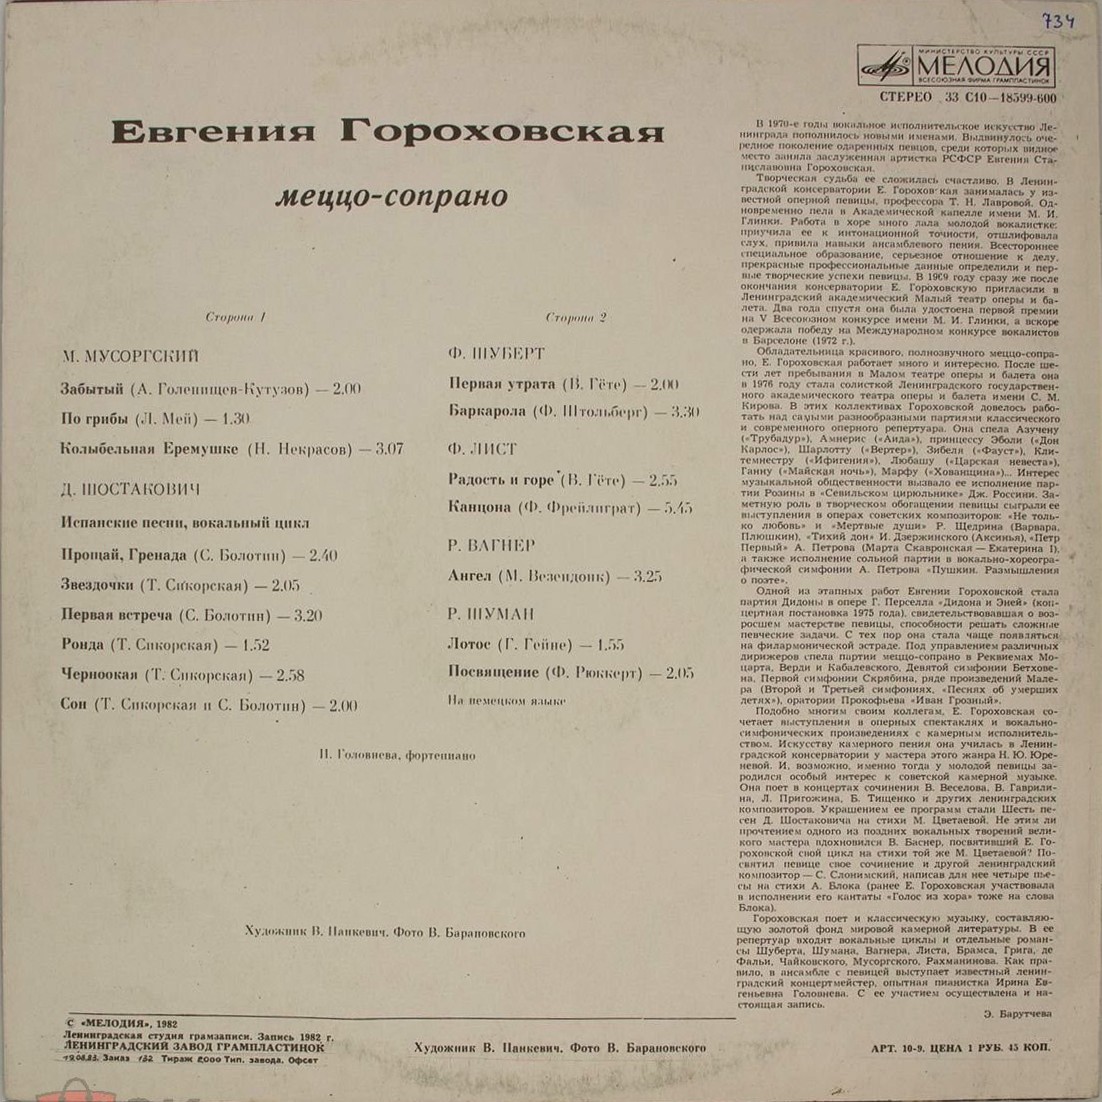 Евгения ГОРОХОВСКАЯ (меццо-сопрано)